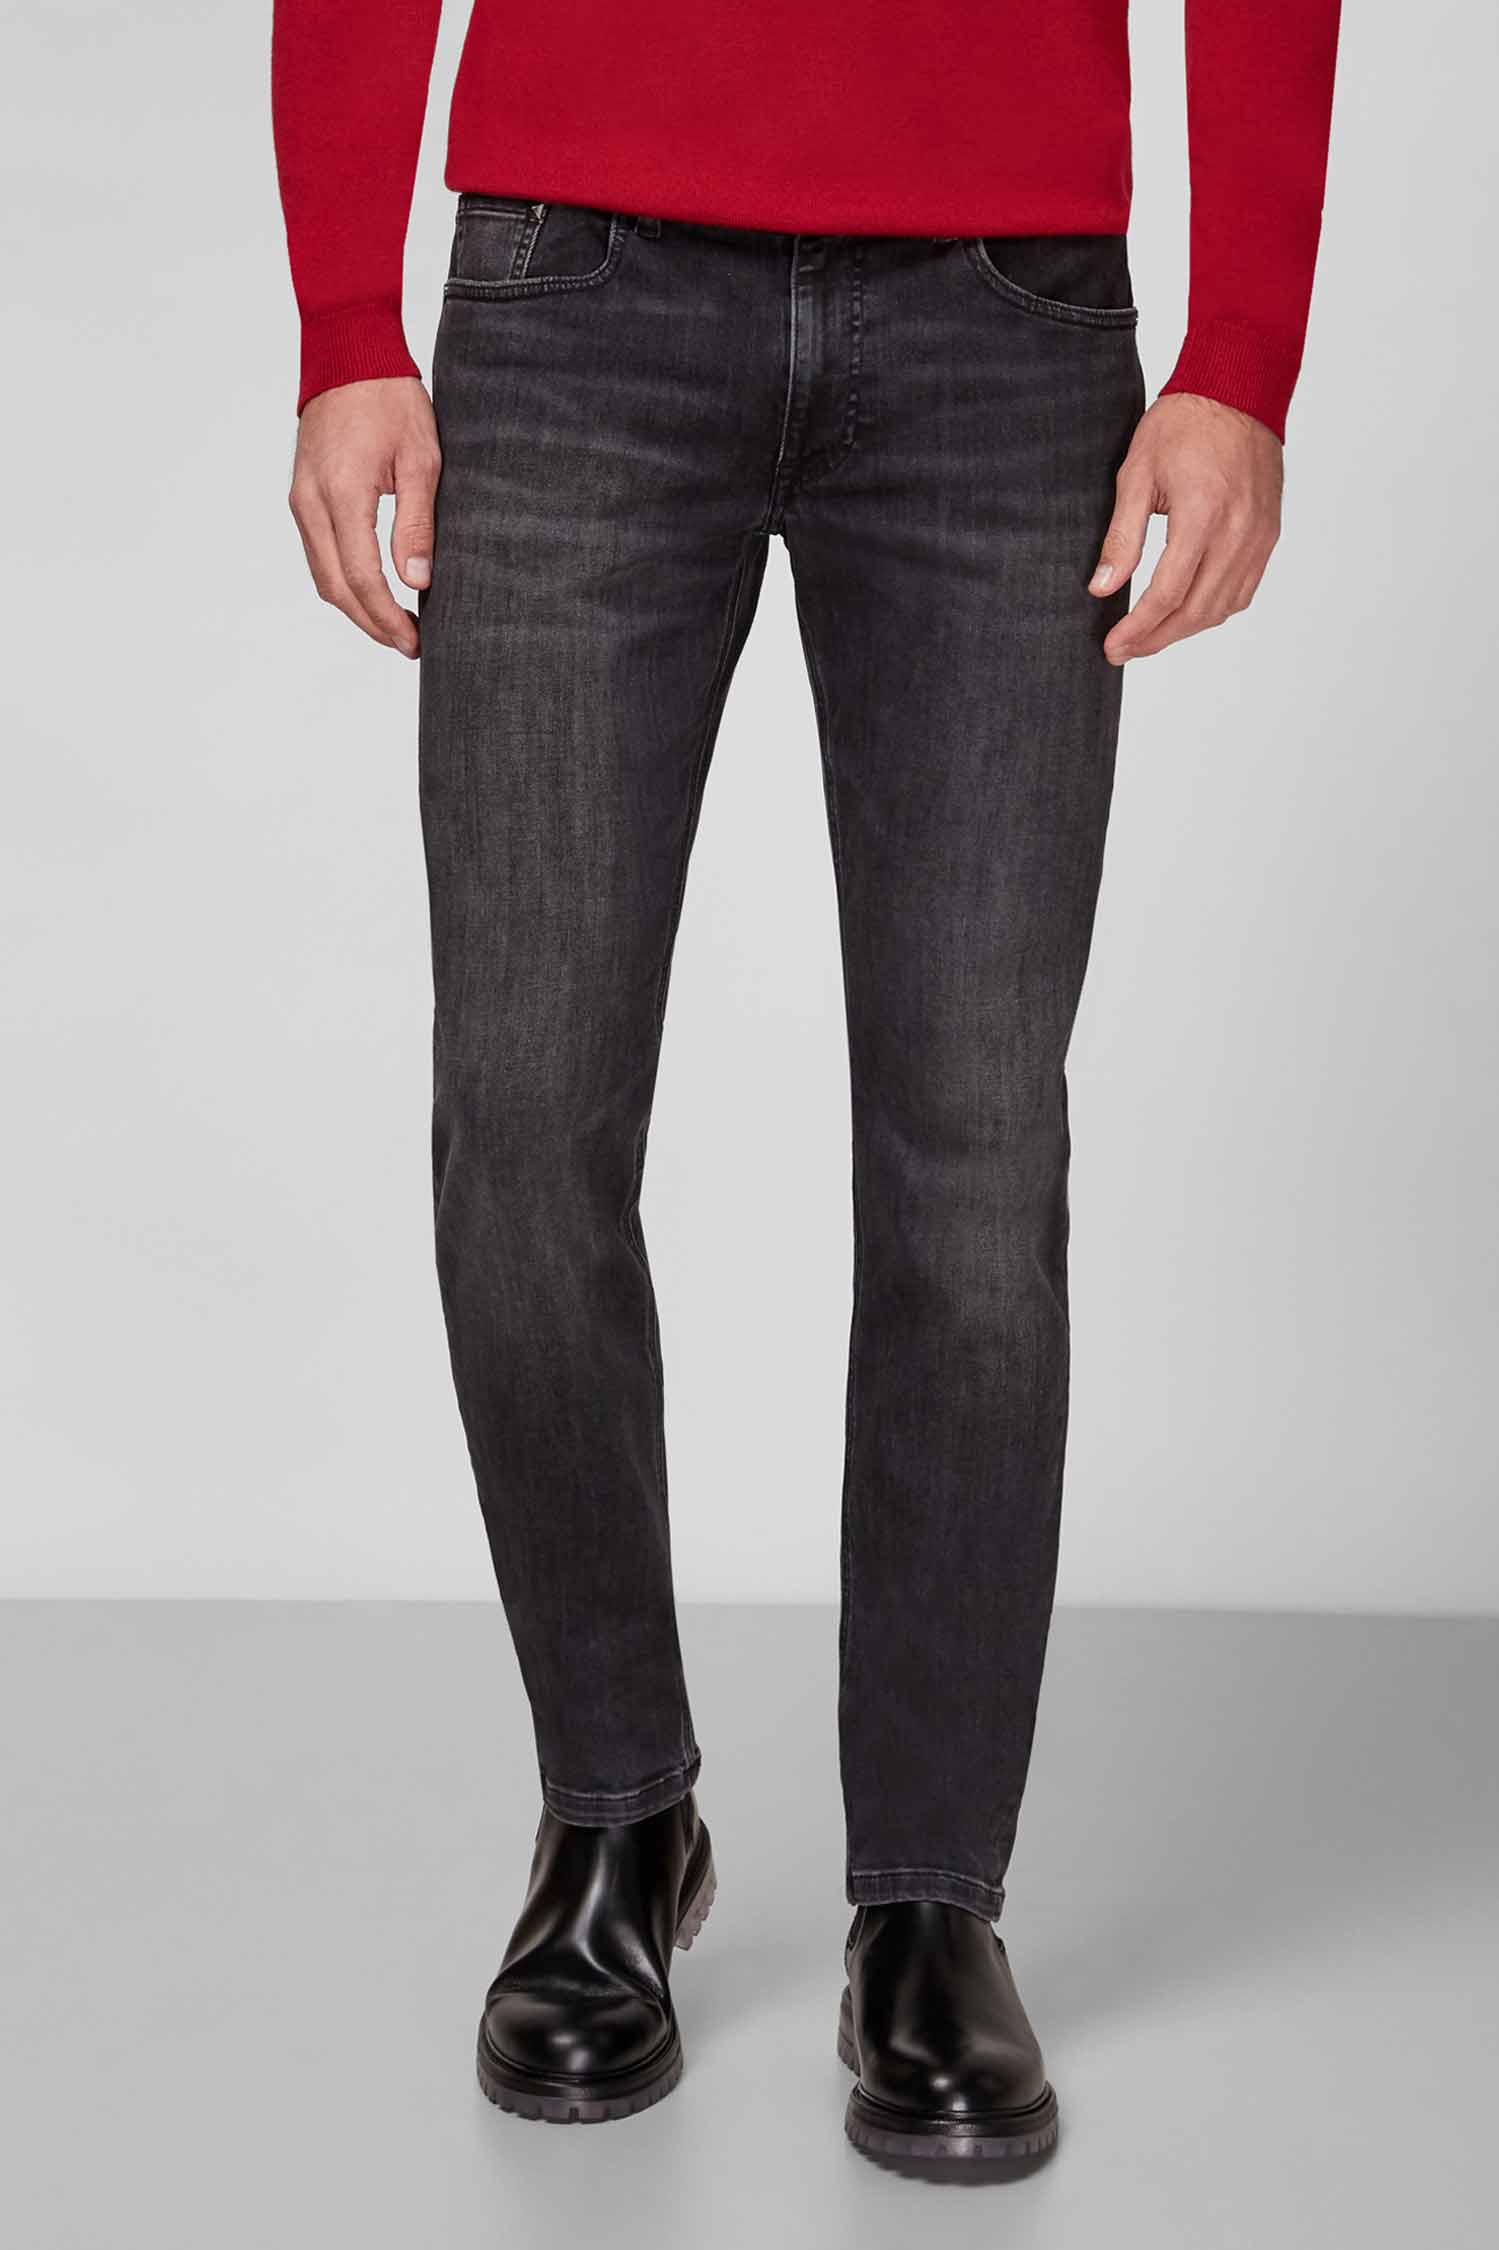 Чоловічі сірі джинси Karl Lagerfeld 512830.265840;990